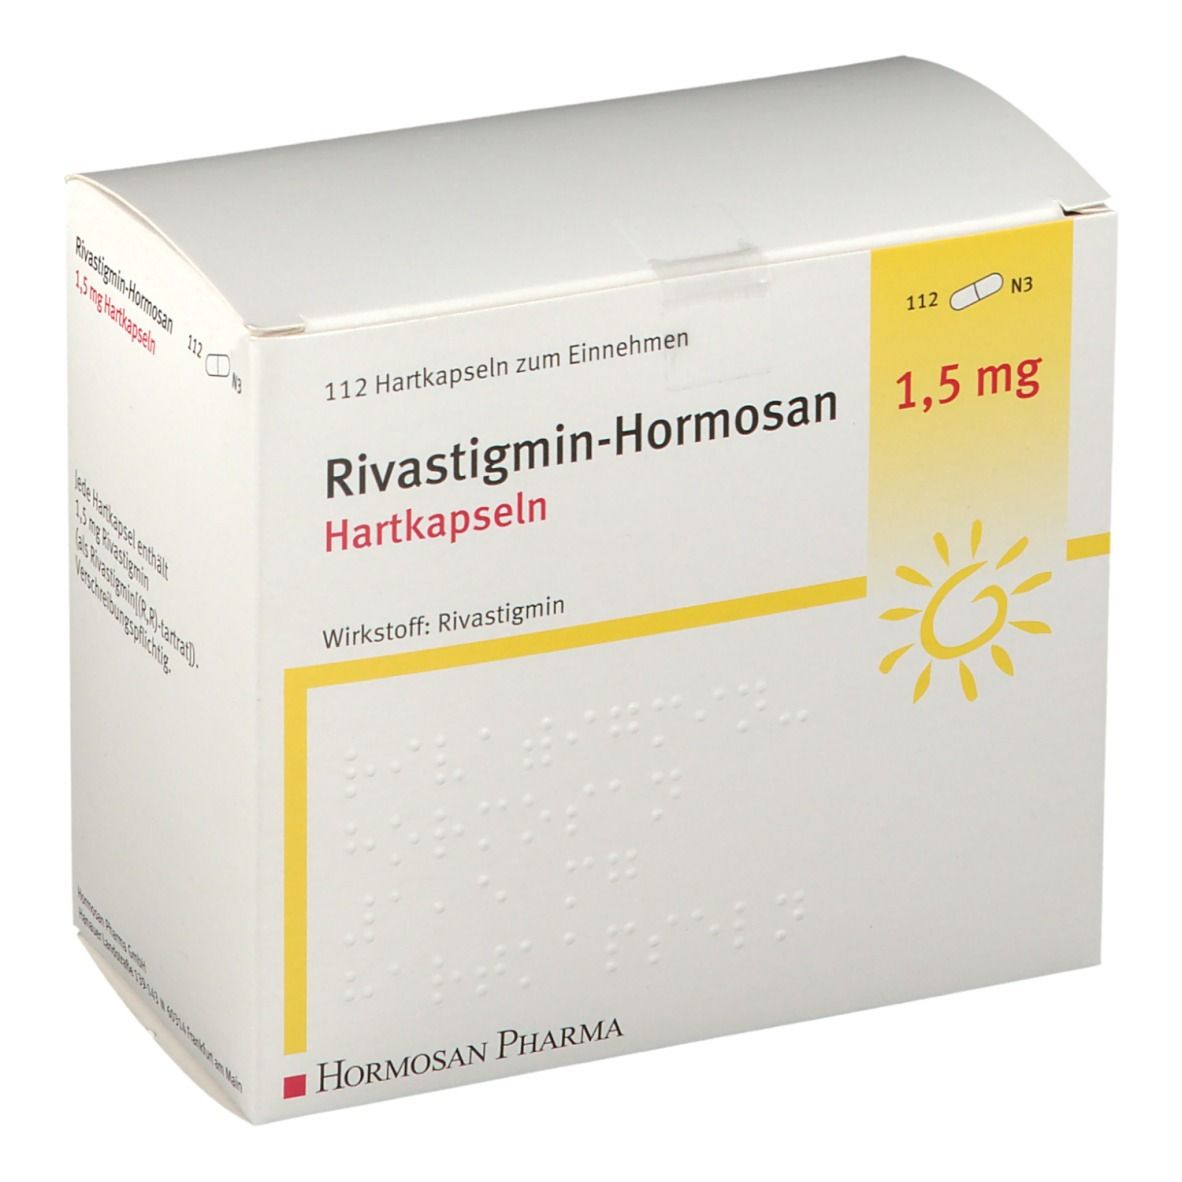 Rivastigmin-Hormosan 1,5 mg